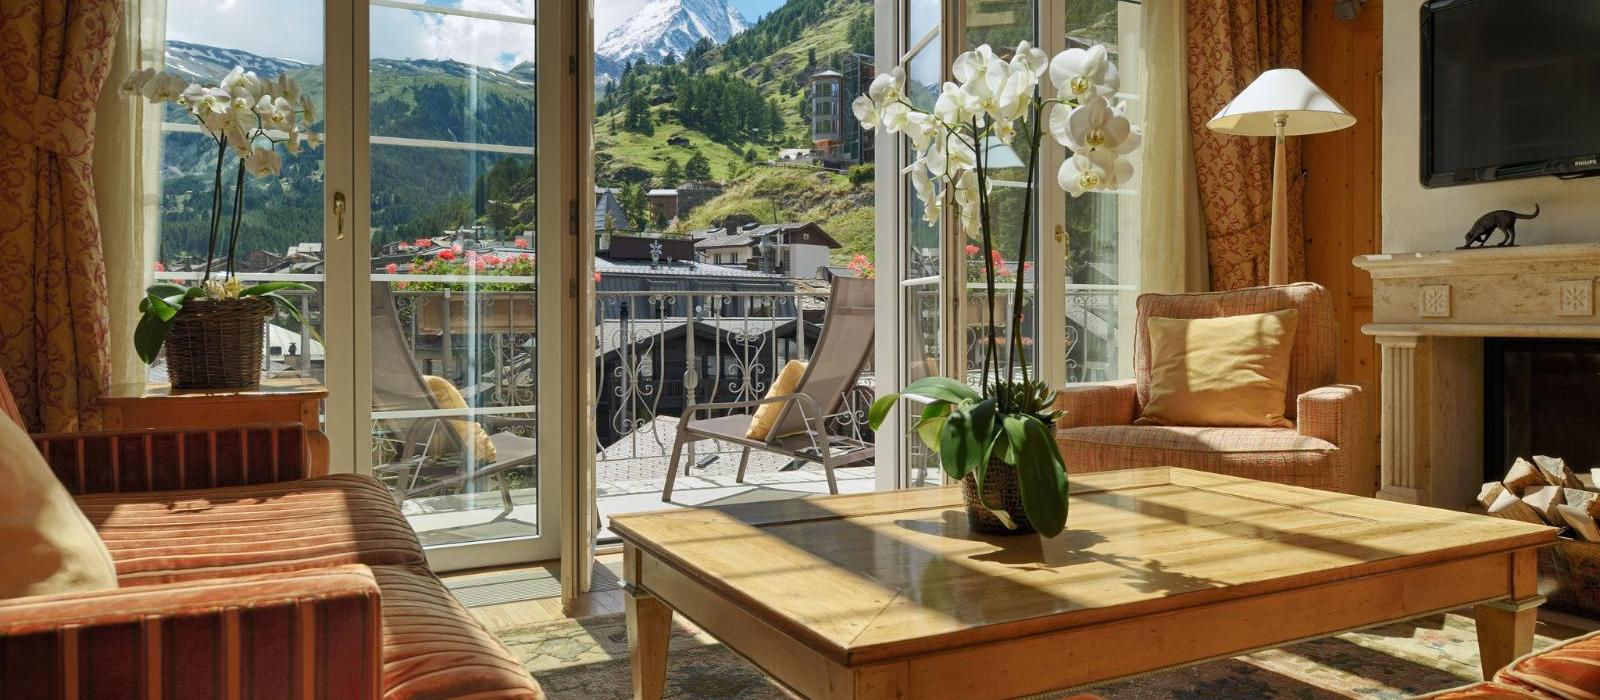 马特峰皇轩酒店(Mont Cervin Palace) 阿尔卑斯山复式套房图片  www.lhw.cn